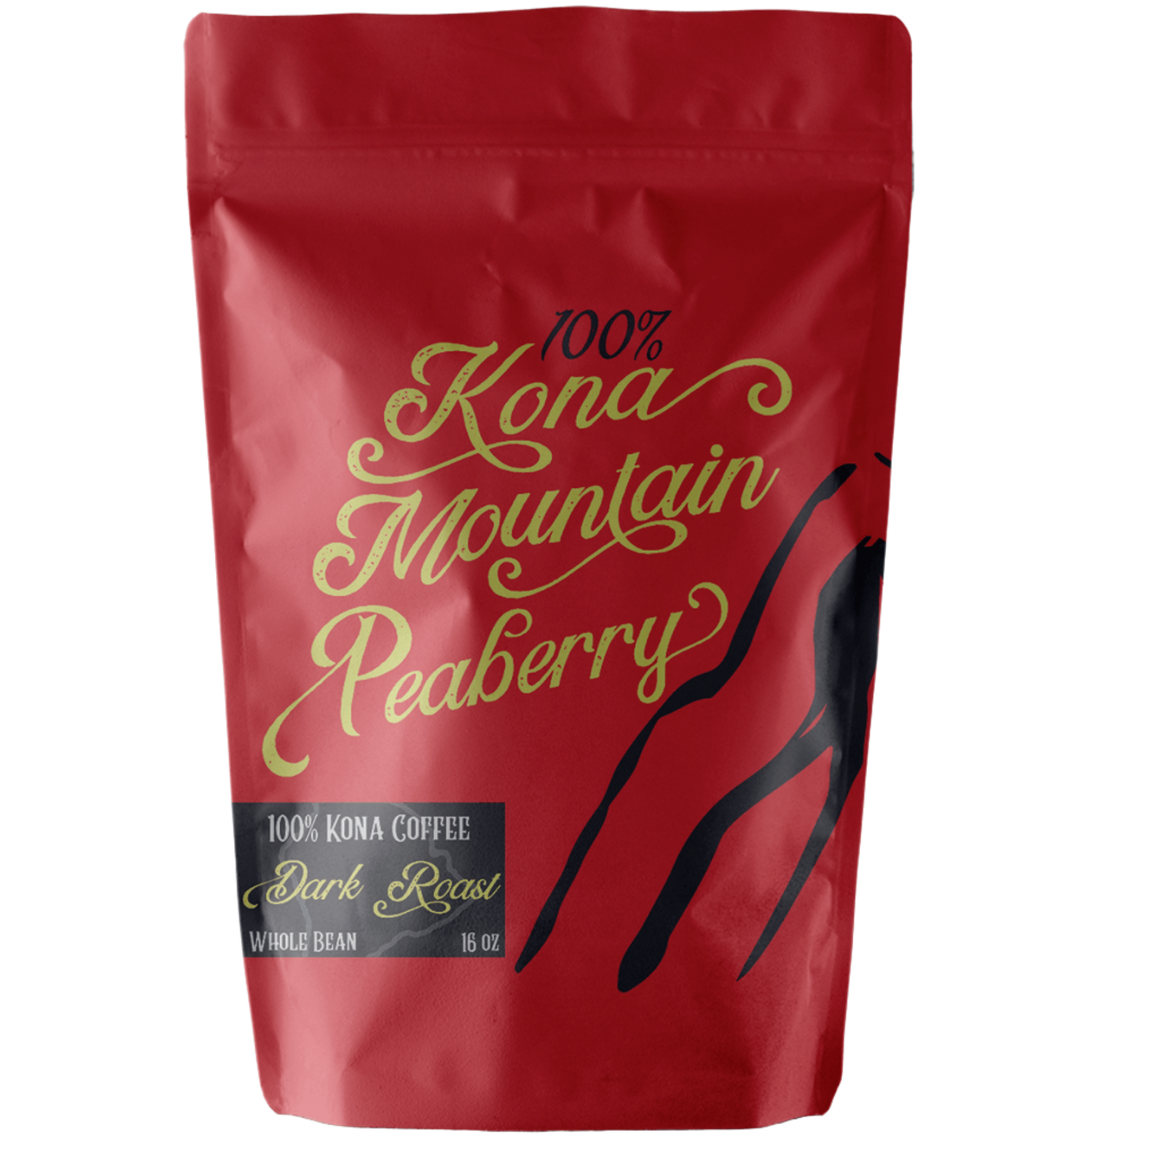 100% Kona Coffee Peaberry Dark Roast - Kona Mountain Coffee